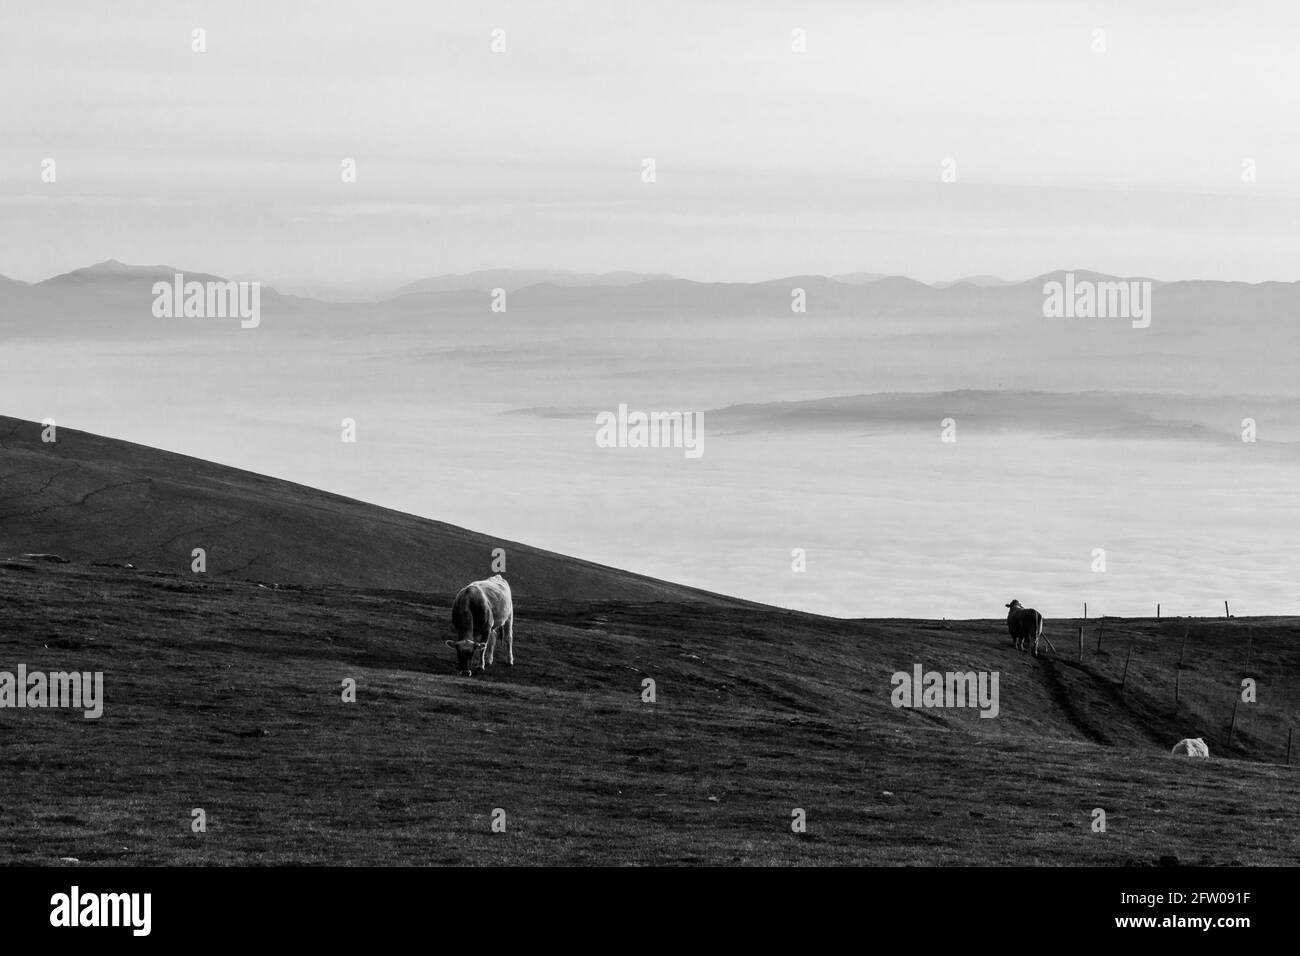 Vaches pasteurs sur une montagne, au-dessus d'une mer de brouillard remplissant une vallée Banque D'Images